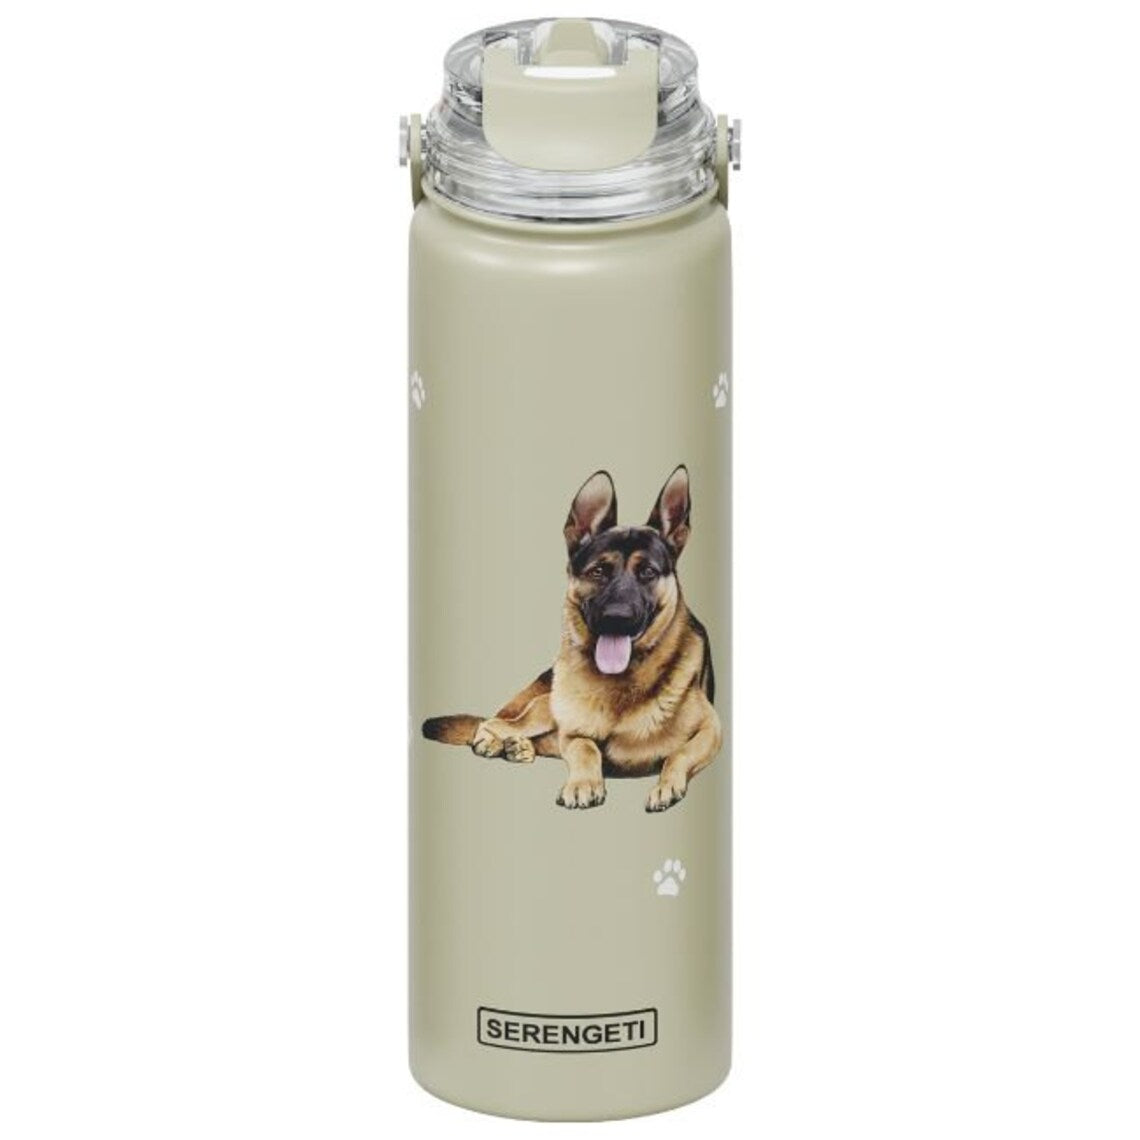 SERENGETI Stainless Steel Water Bottle 24oz - German Shepherd